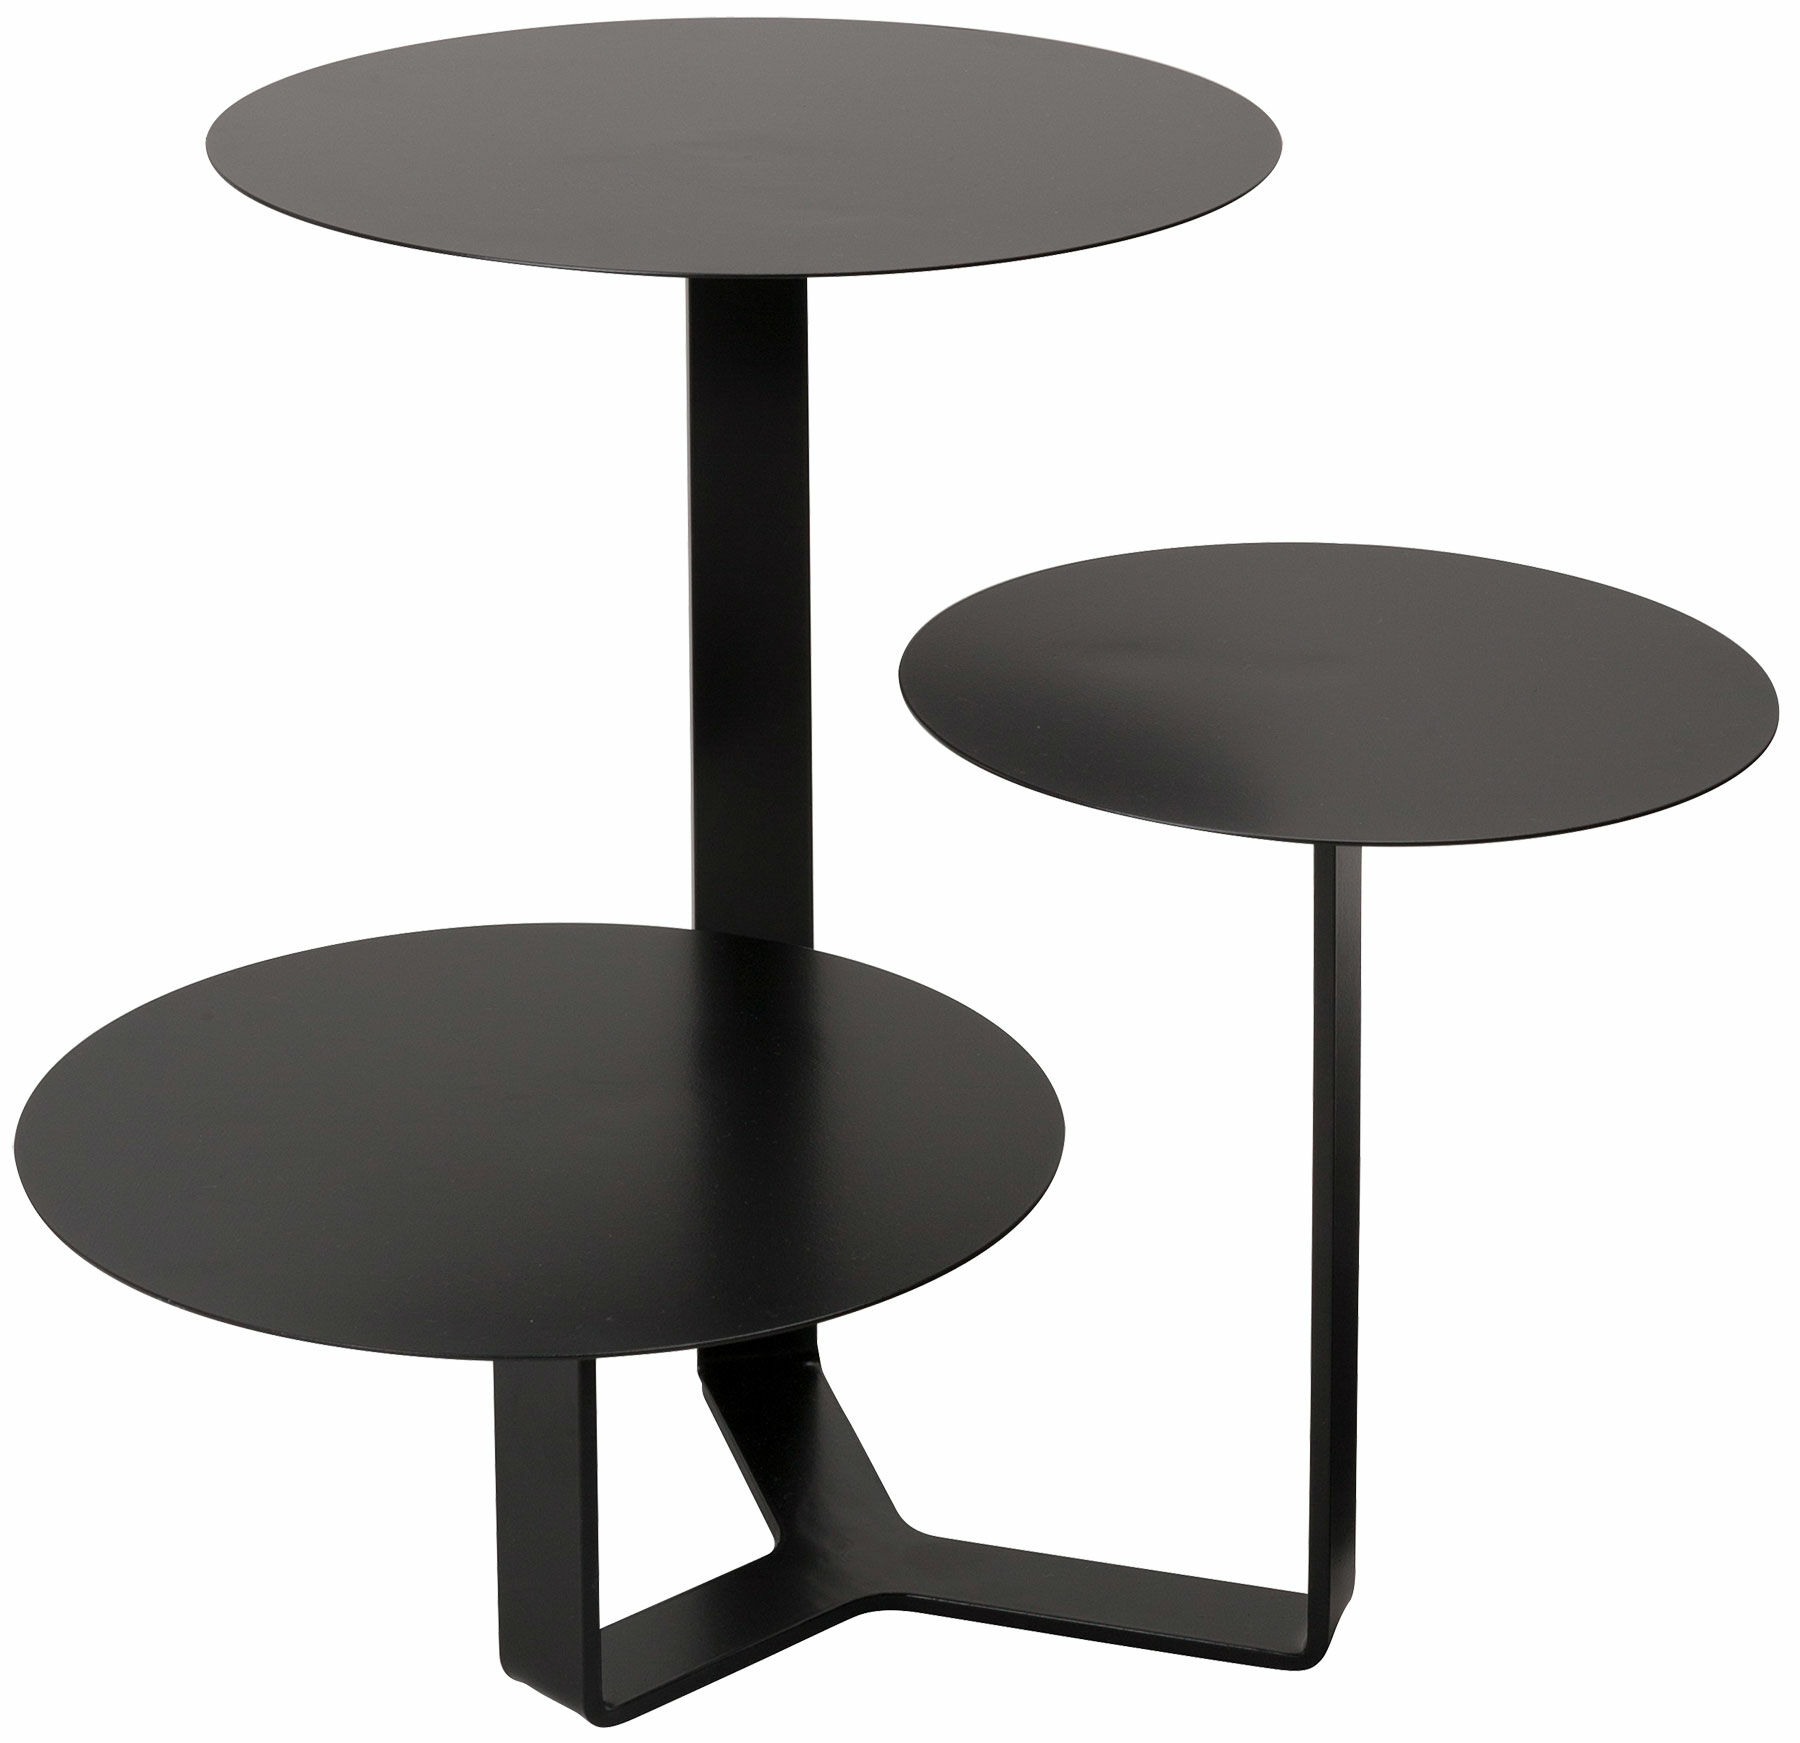 Table d'appoint "Triple", version noire